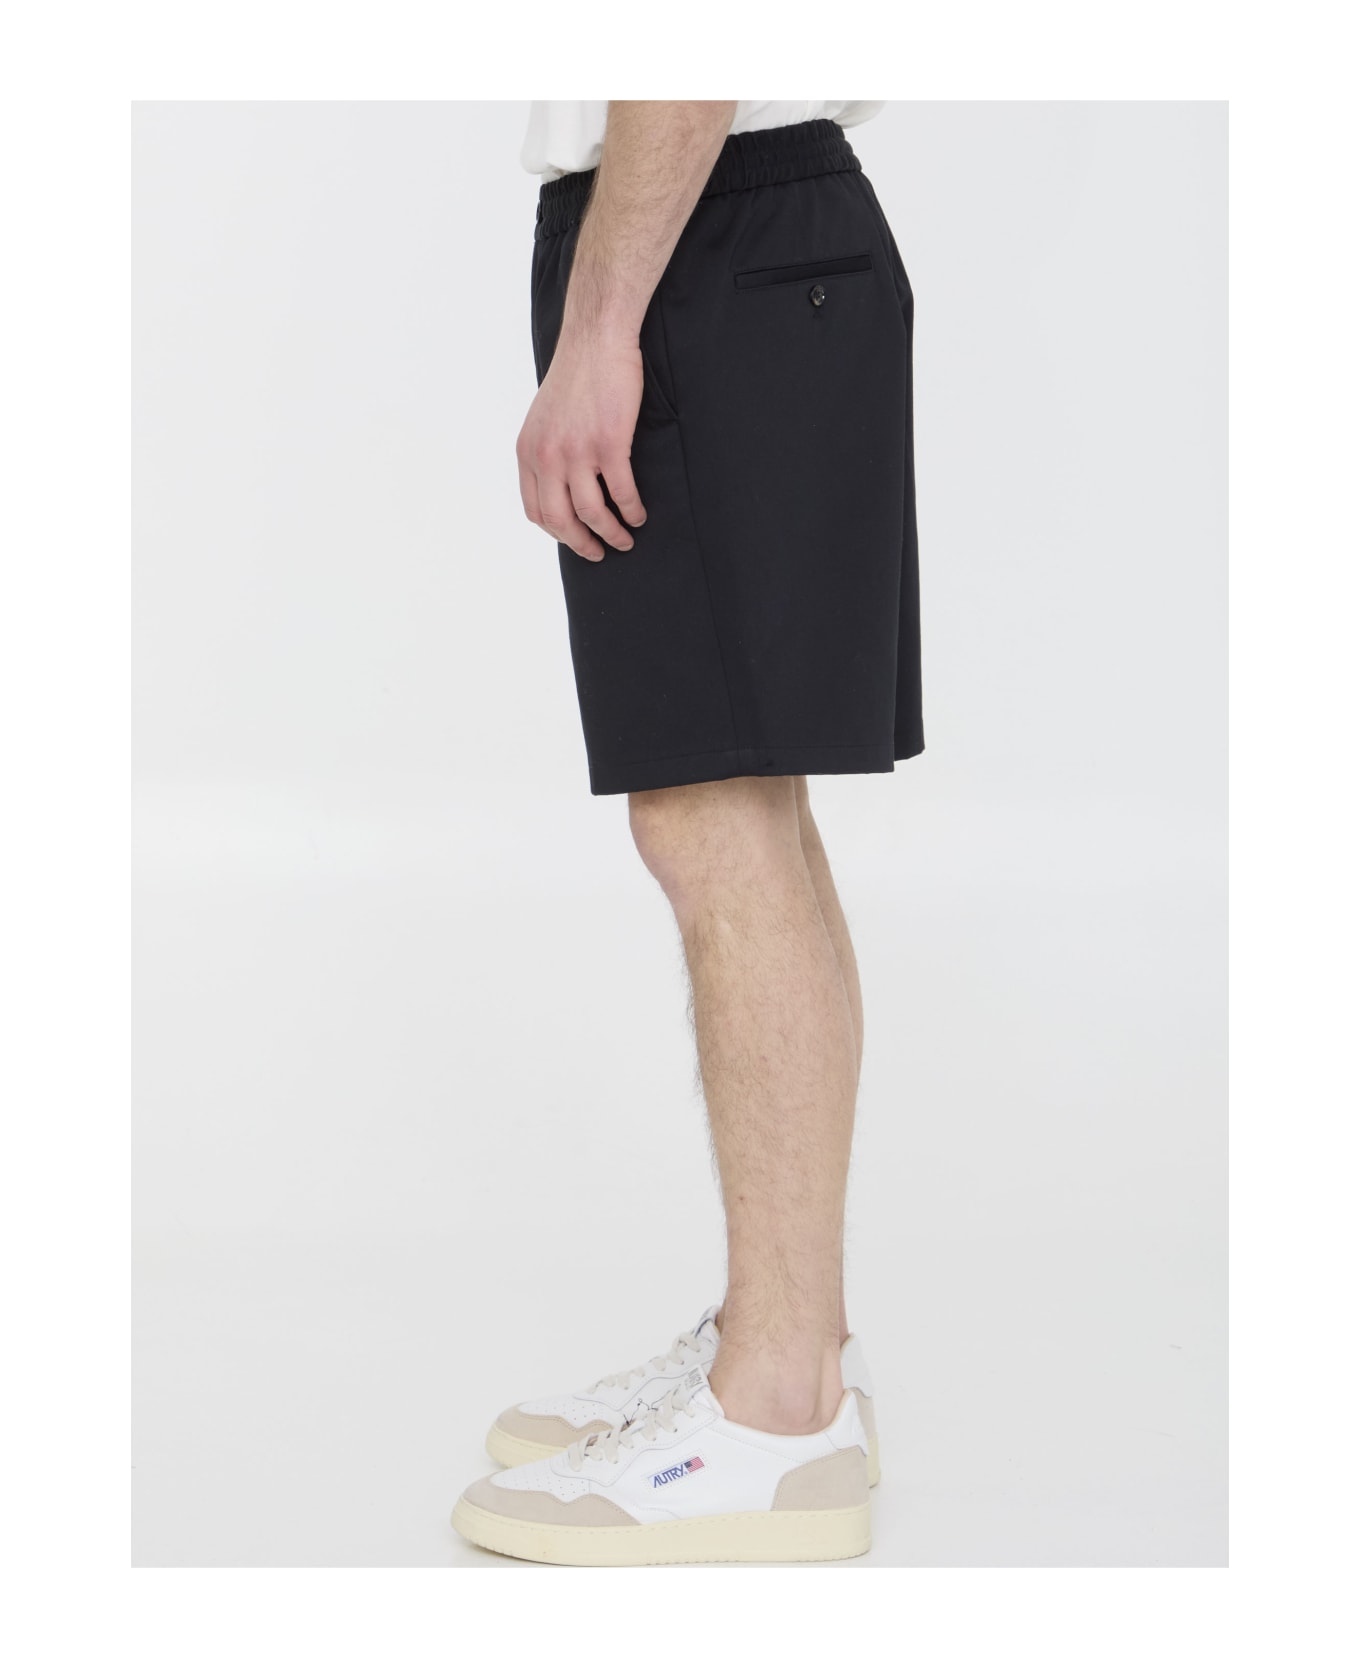 Ami Alexandre Mattiussi Cotton Bermuda Shorts - 001 BLACK